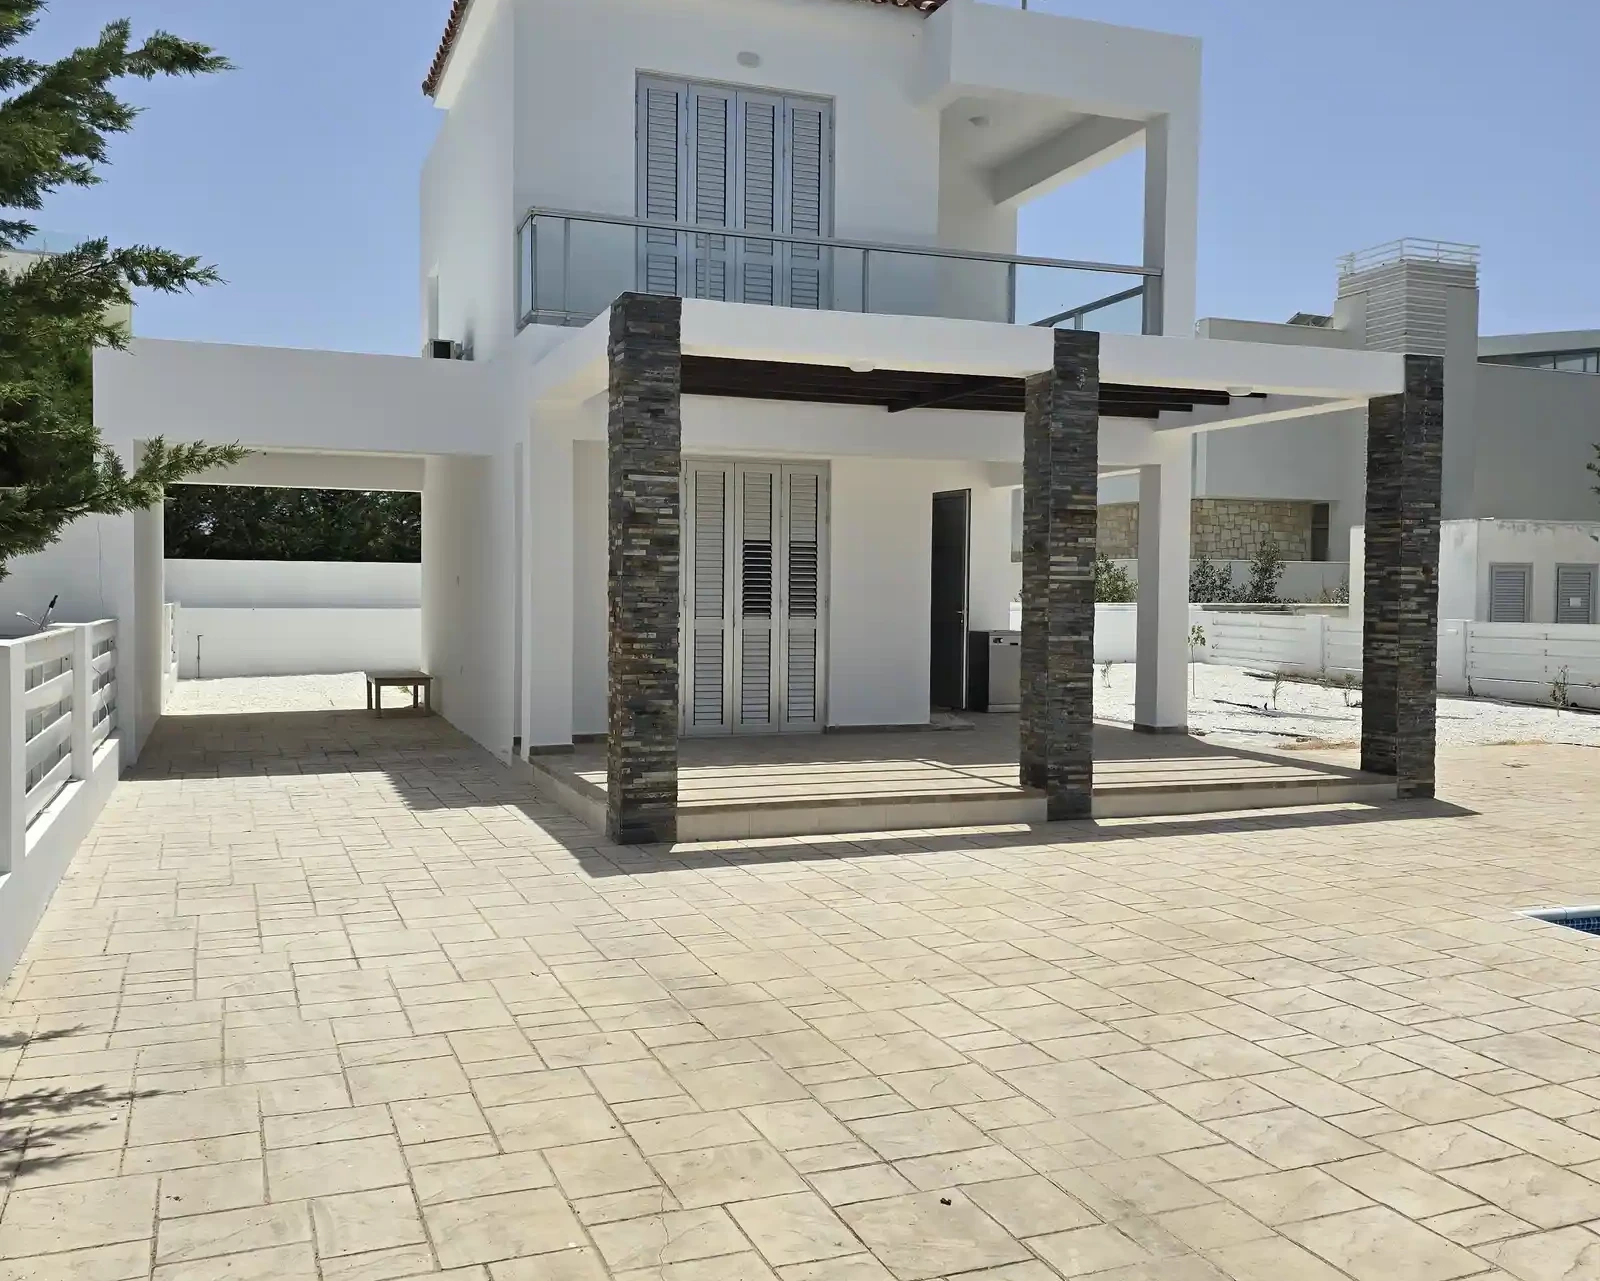 2-bedroom villa to rent €1.100, image 1